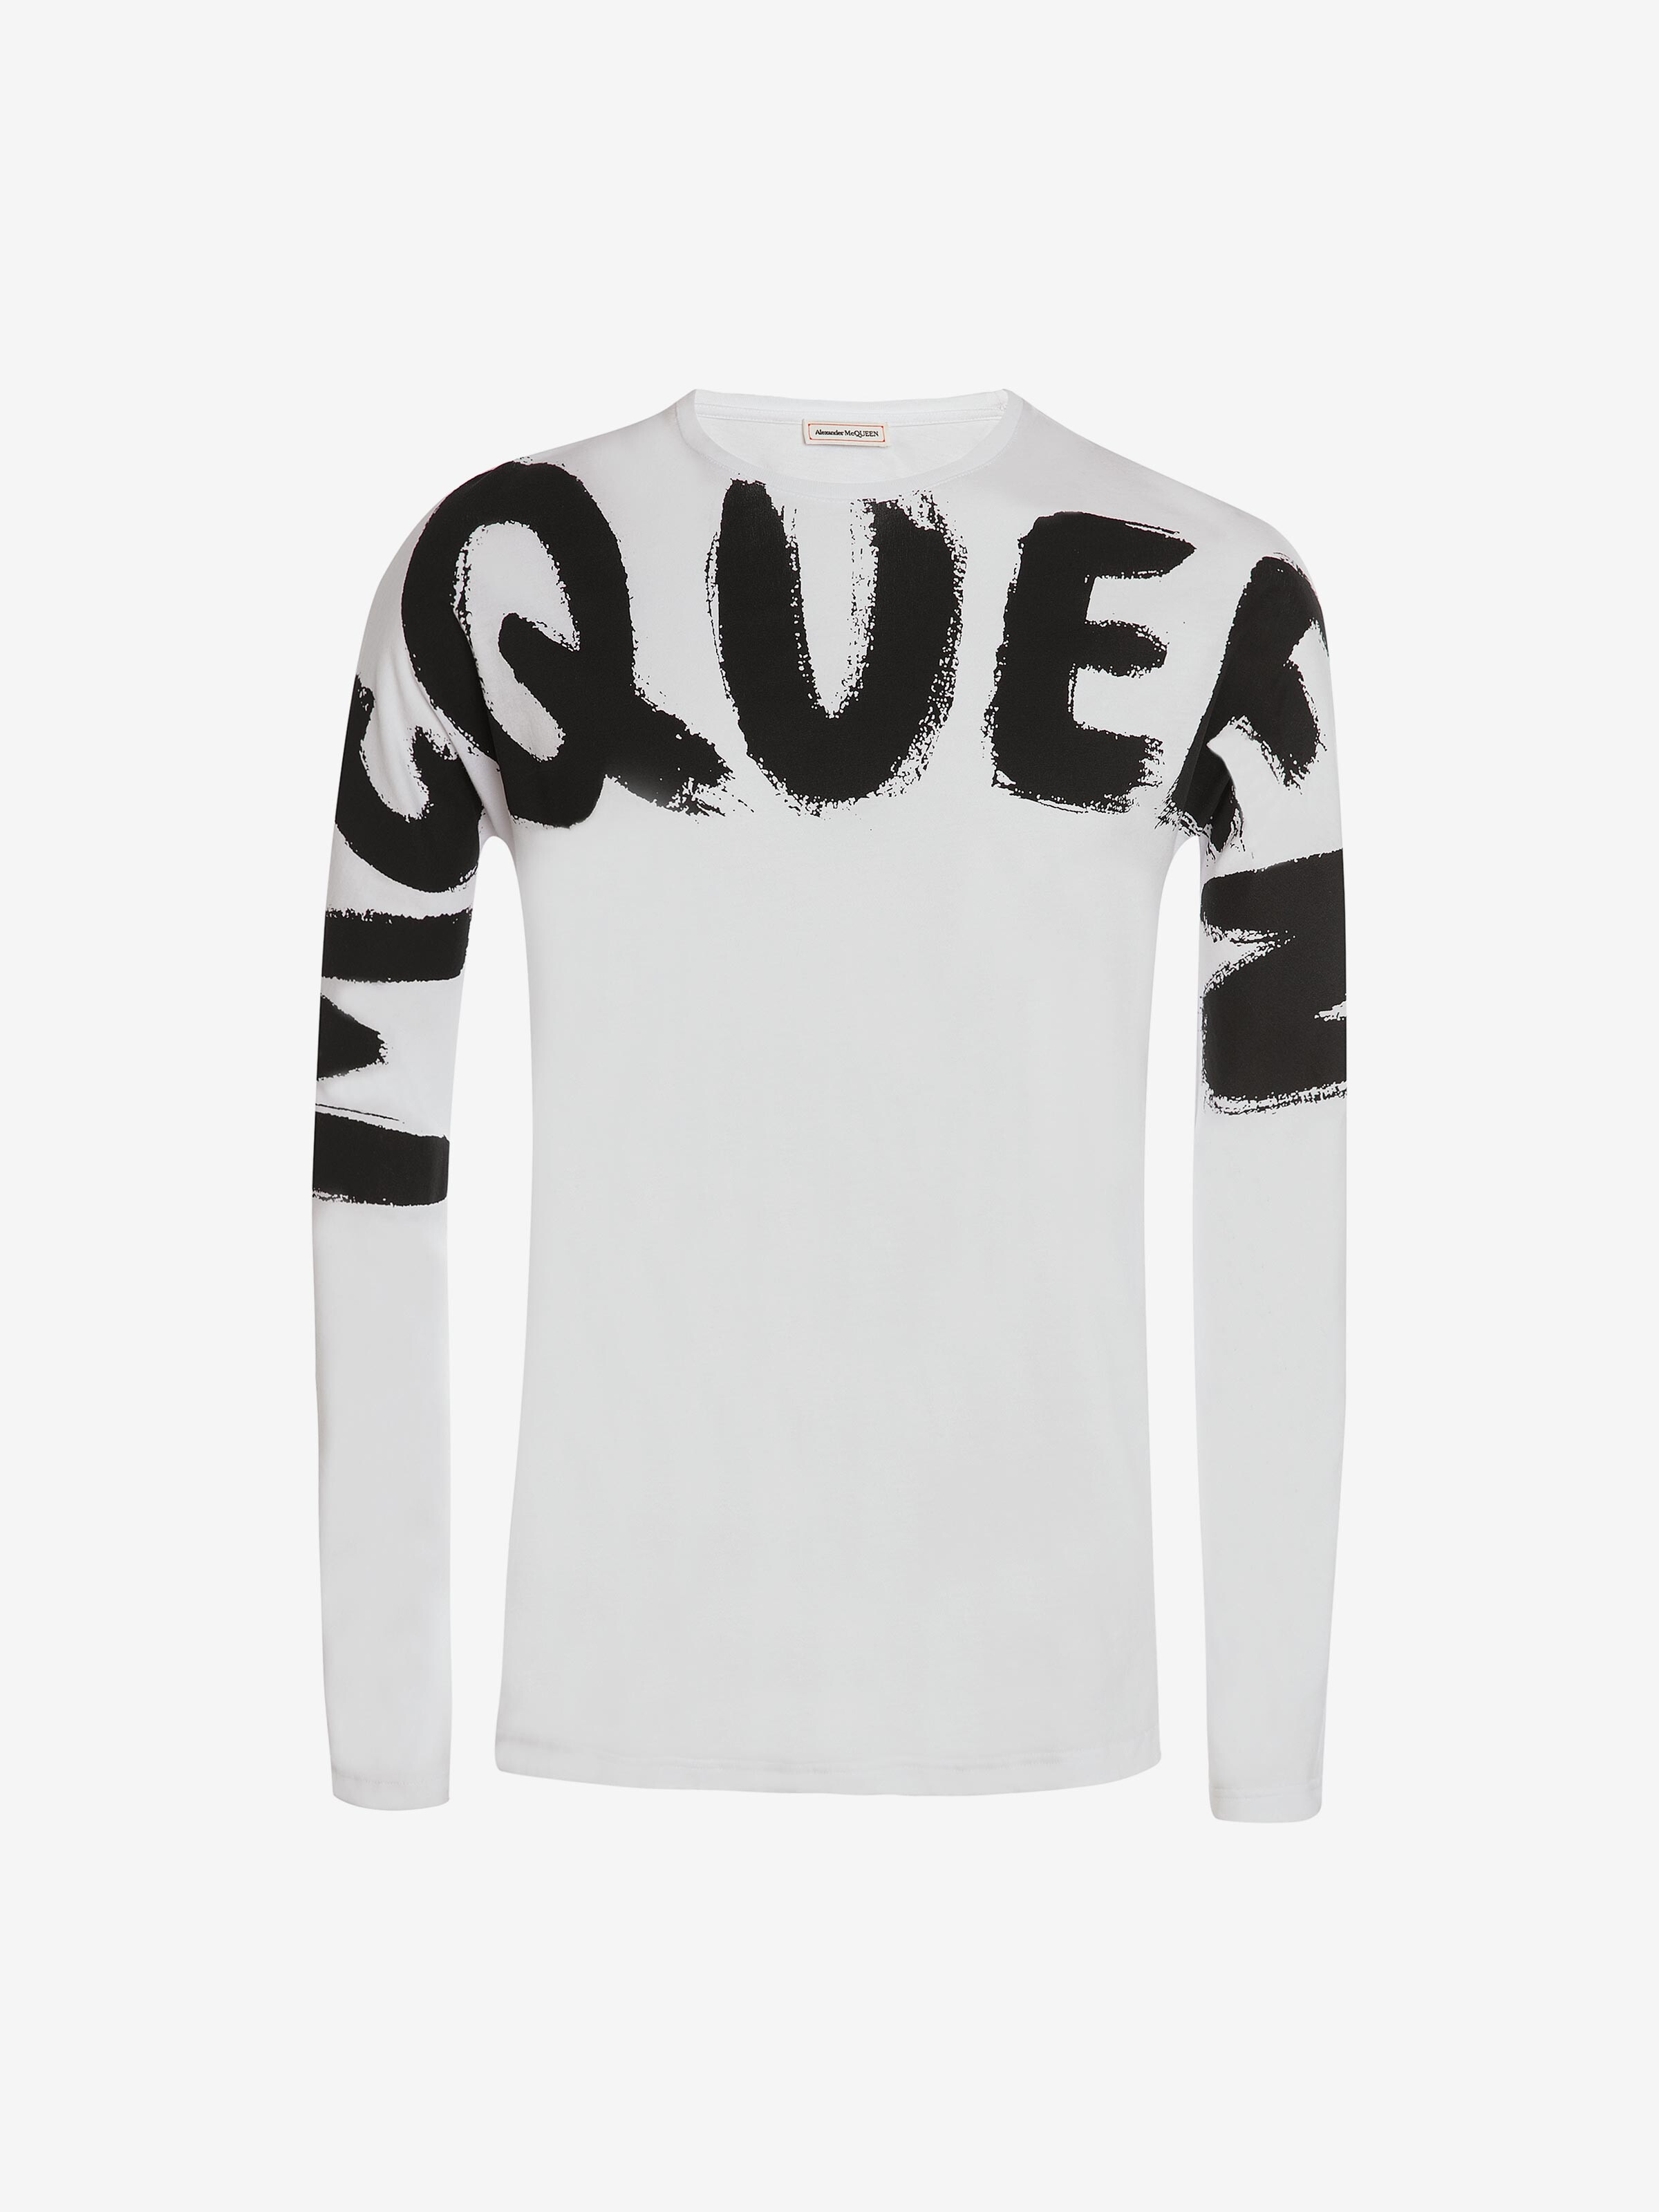 McQueen Graffiti Long Sleeve T-Shirt